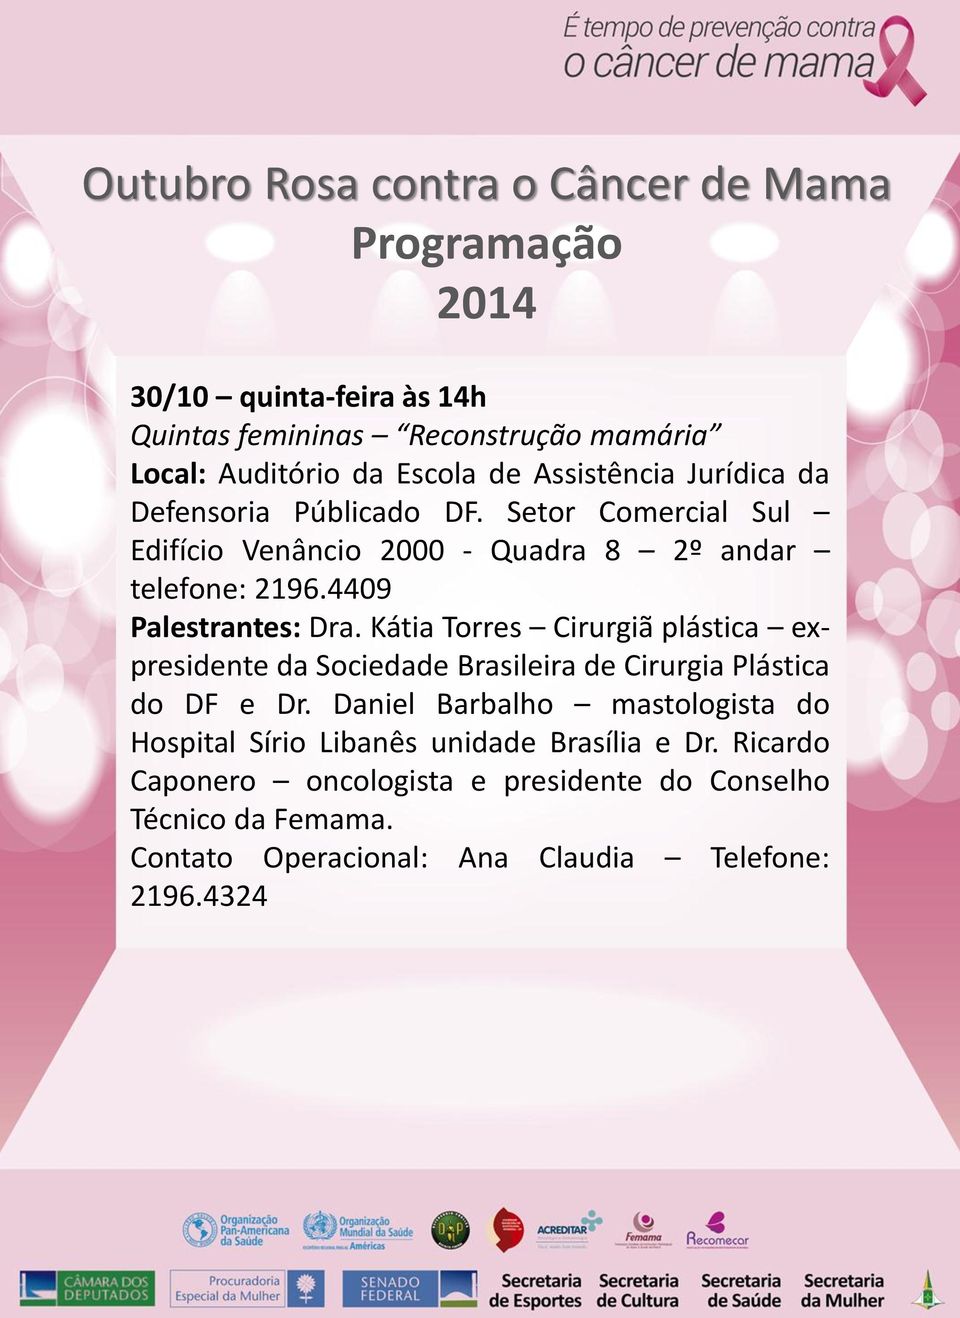 Kátia Torres Cirurgiã plástica expresidente da Sociedade Brasileira de Cirurgia Plástica do DF e Dr.